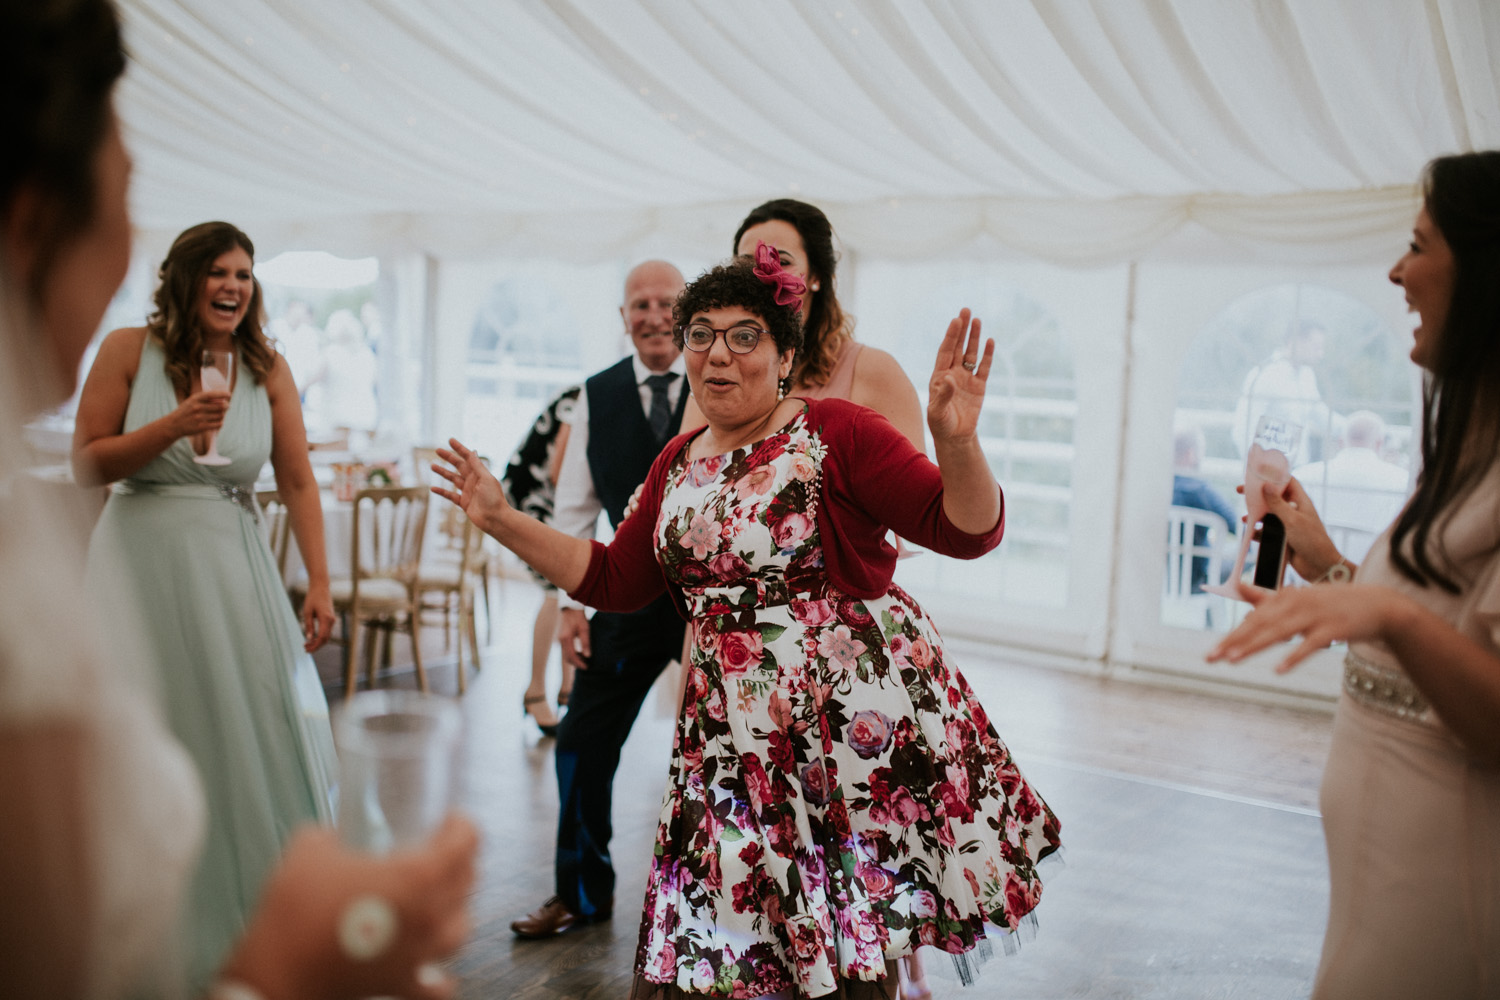 wedding guest dancing